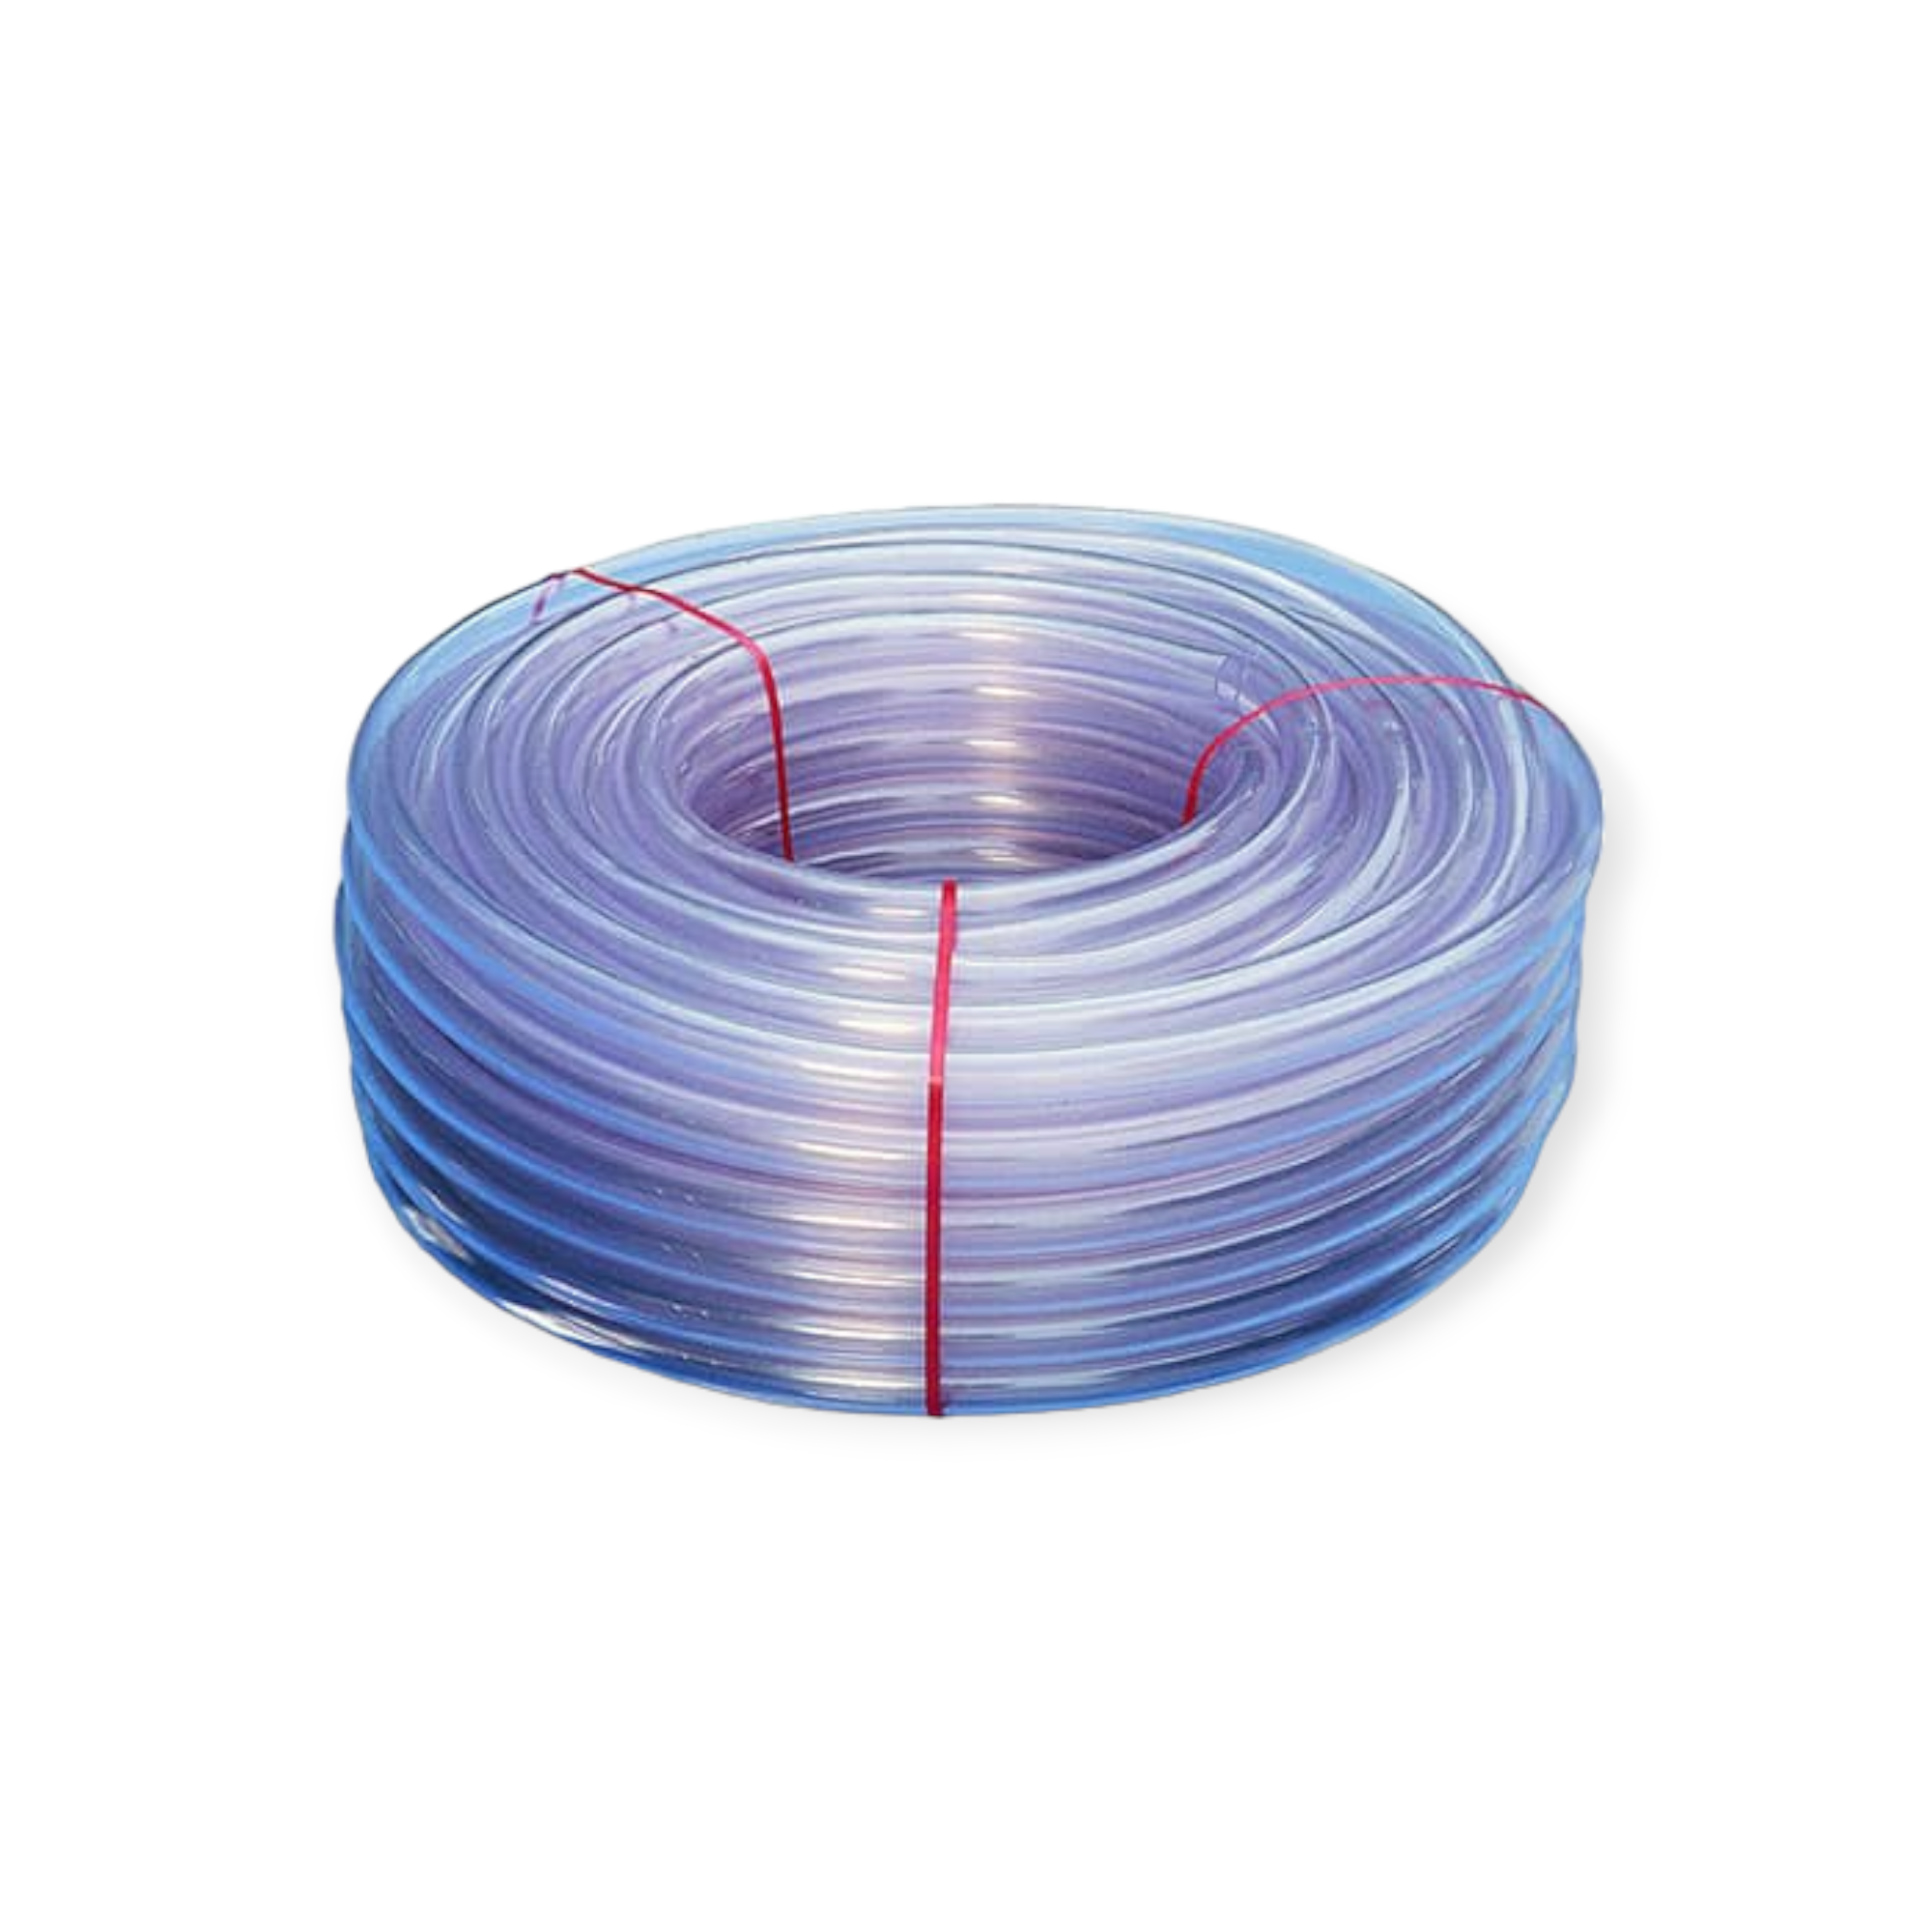 Flexibler PVC-Schlauch für vielseitige Anwendungen - Jetzt Kaufen!